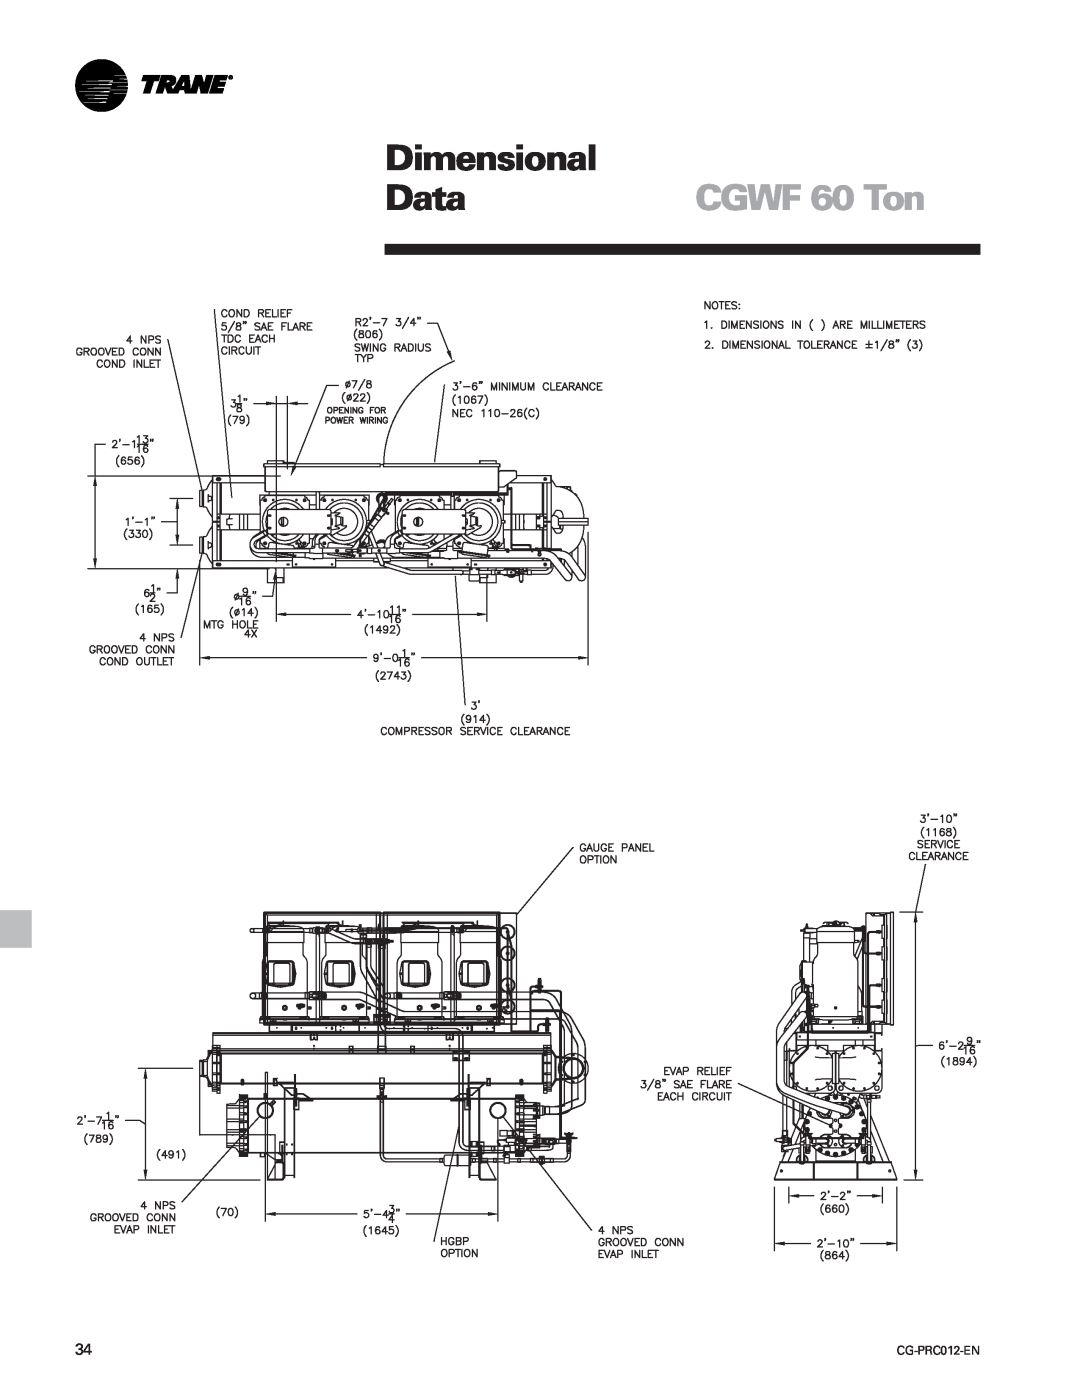 Trane CCAF manual CGWF 60 Ton, Dimensional, Data 